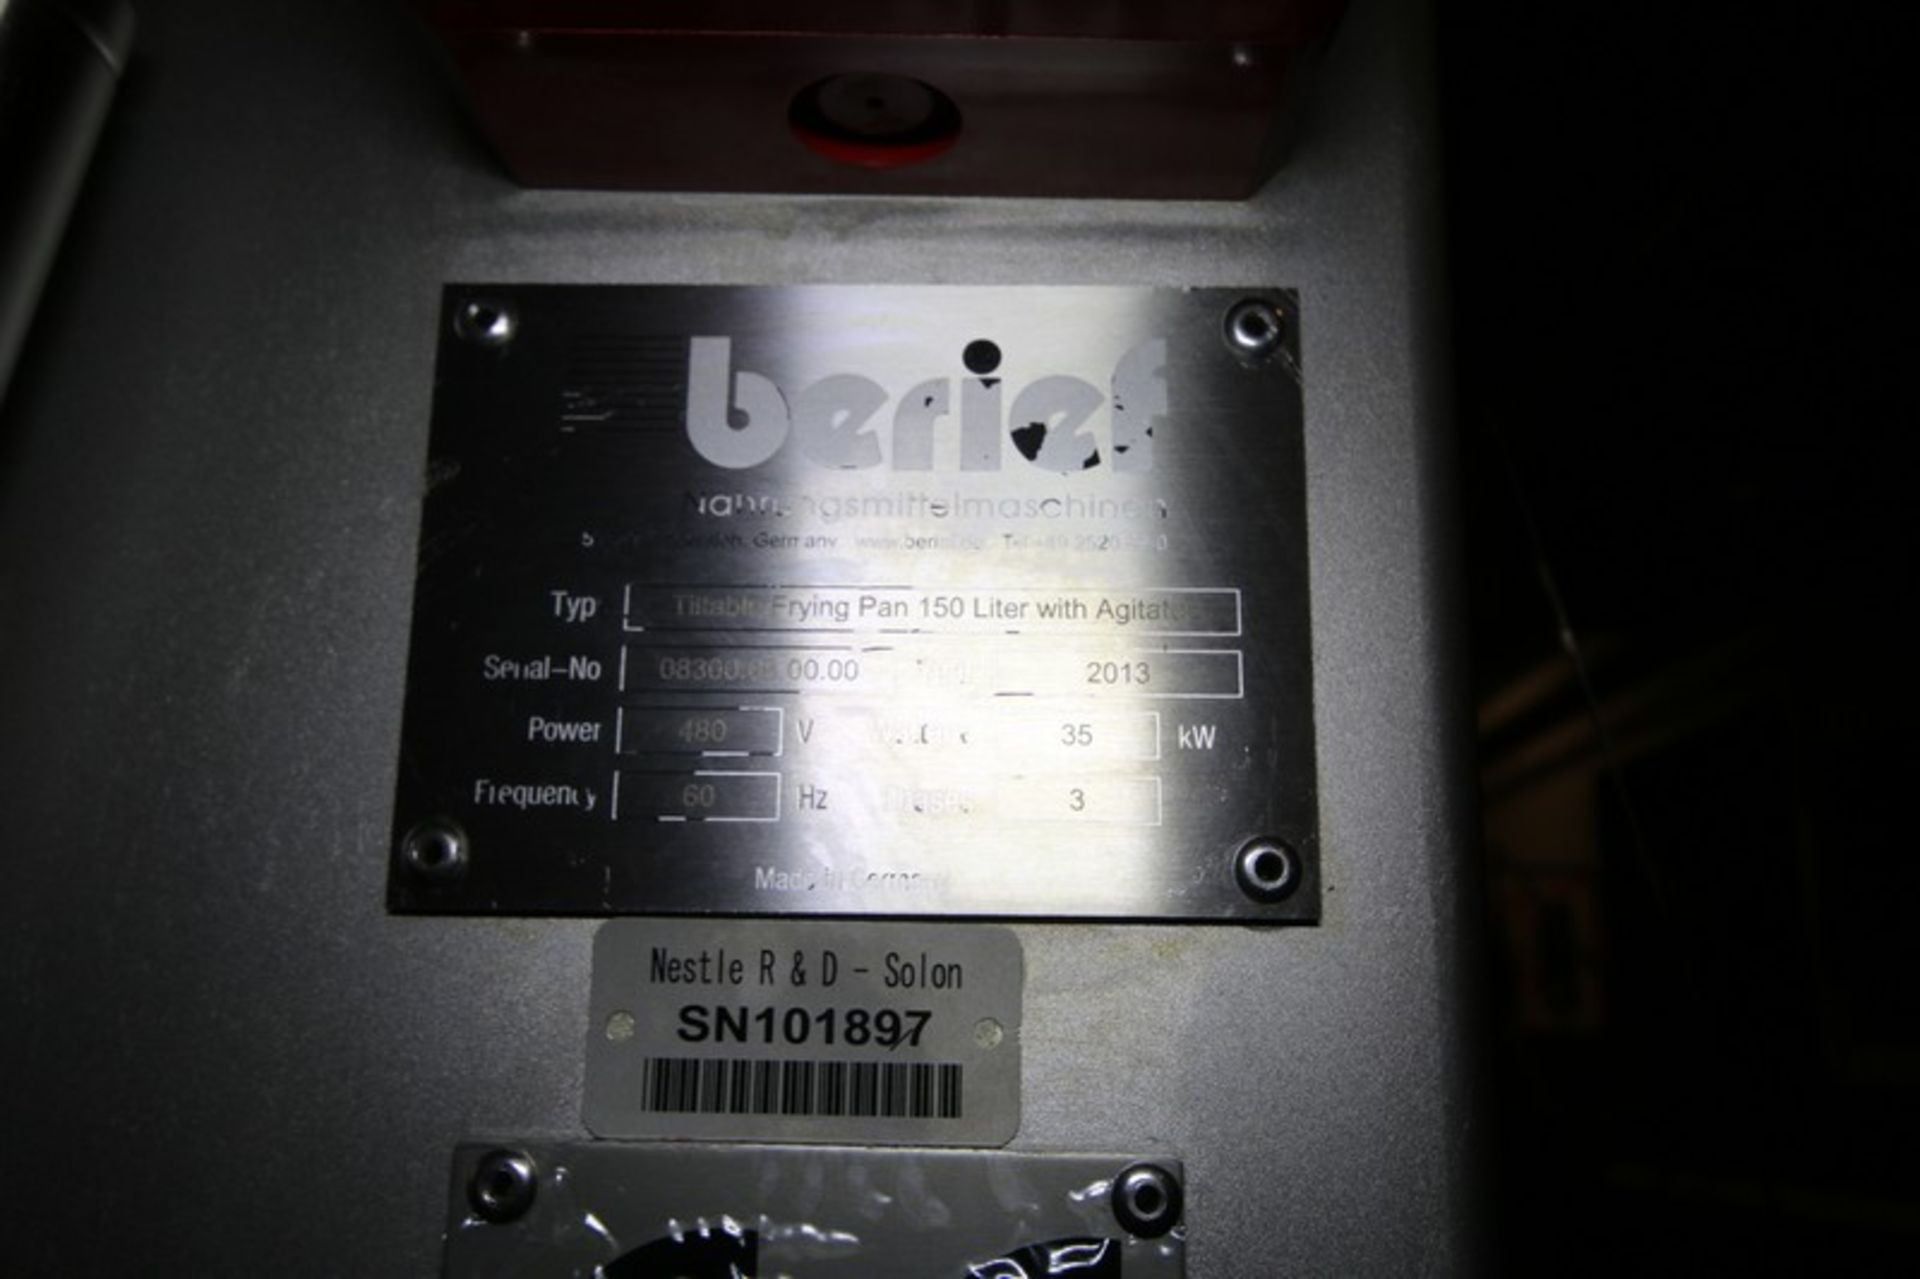 2013 Berief 150 Liter S/S Tilting Fryer Type Tiltable Frying Pan 150 Liter with Agitator, SN 08300. - Image 7 of 9